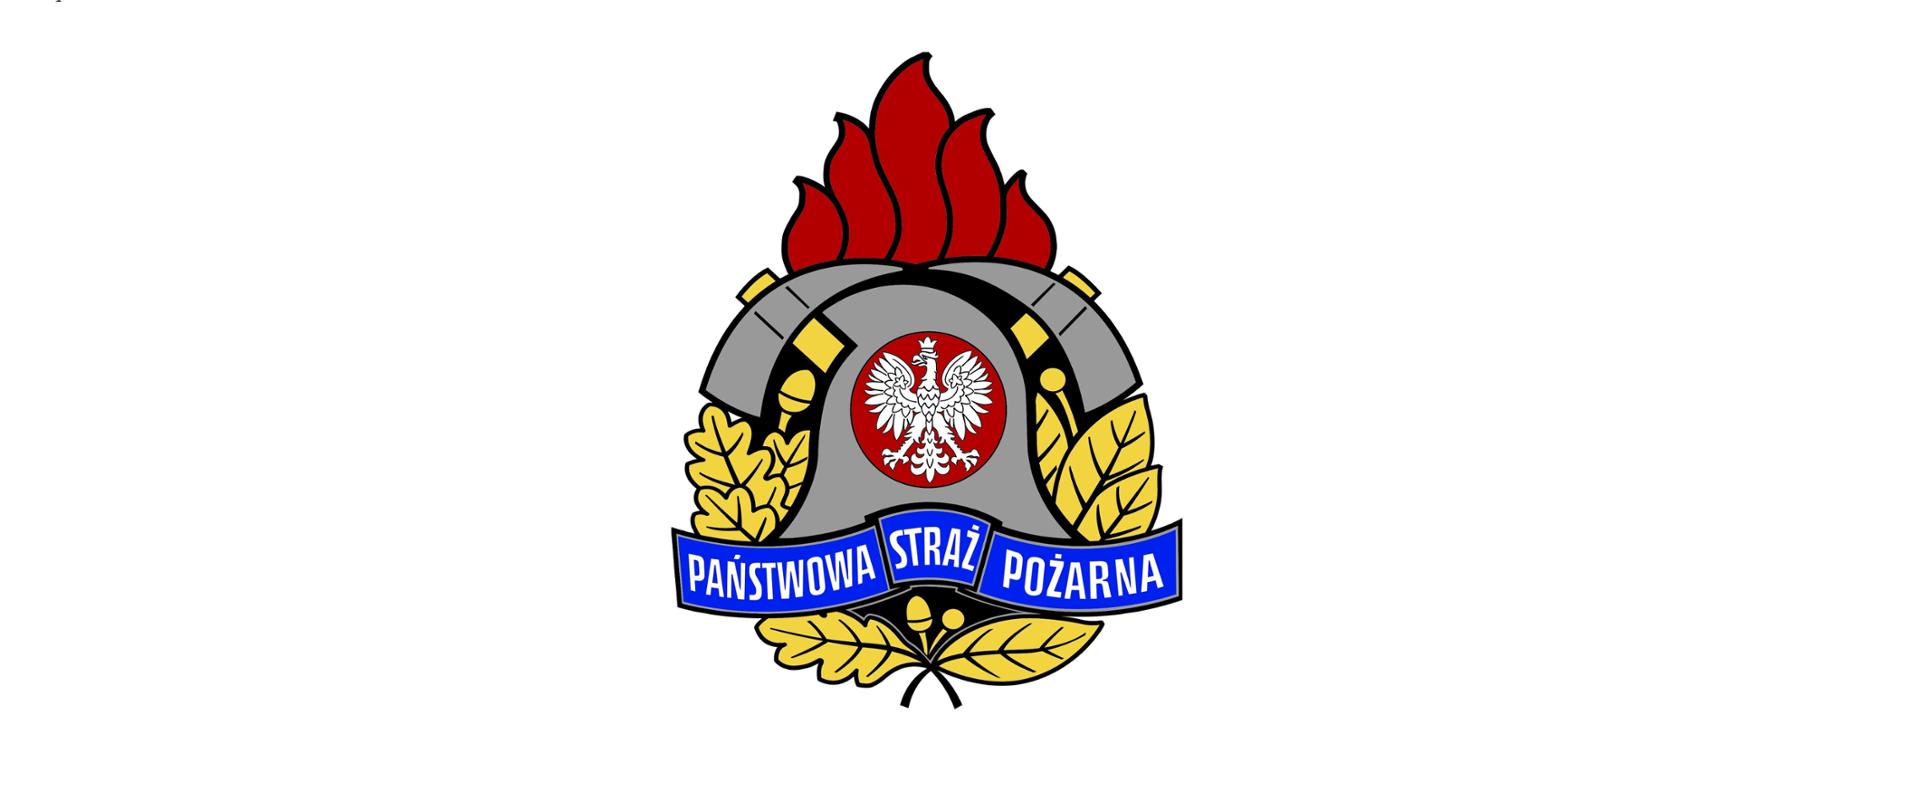 Zdjęcie przedstawia logo państwowej straży pożarnej